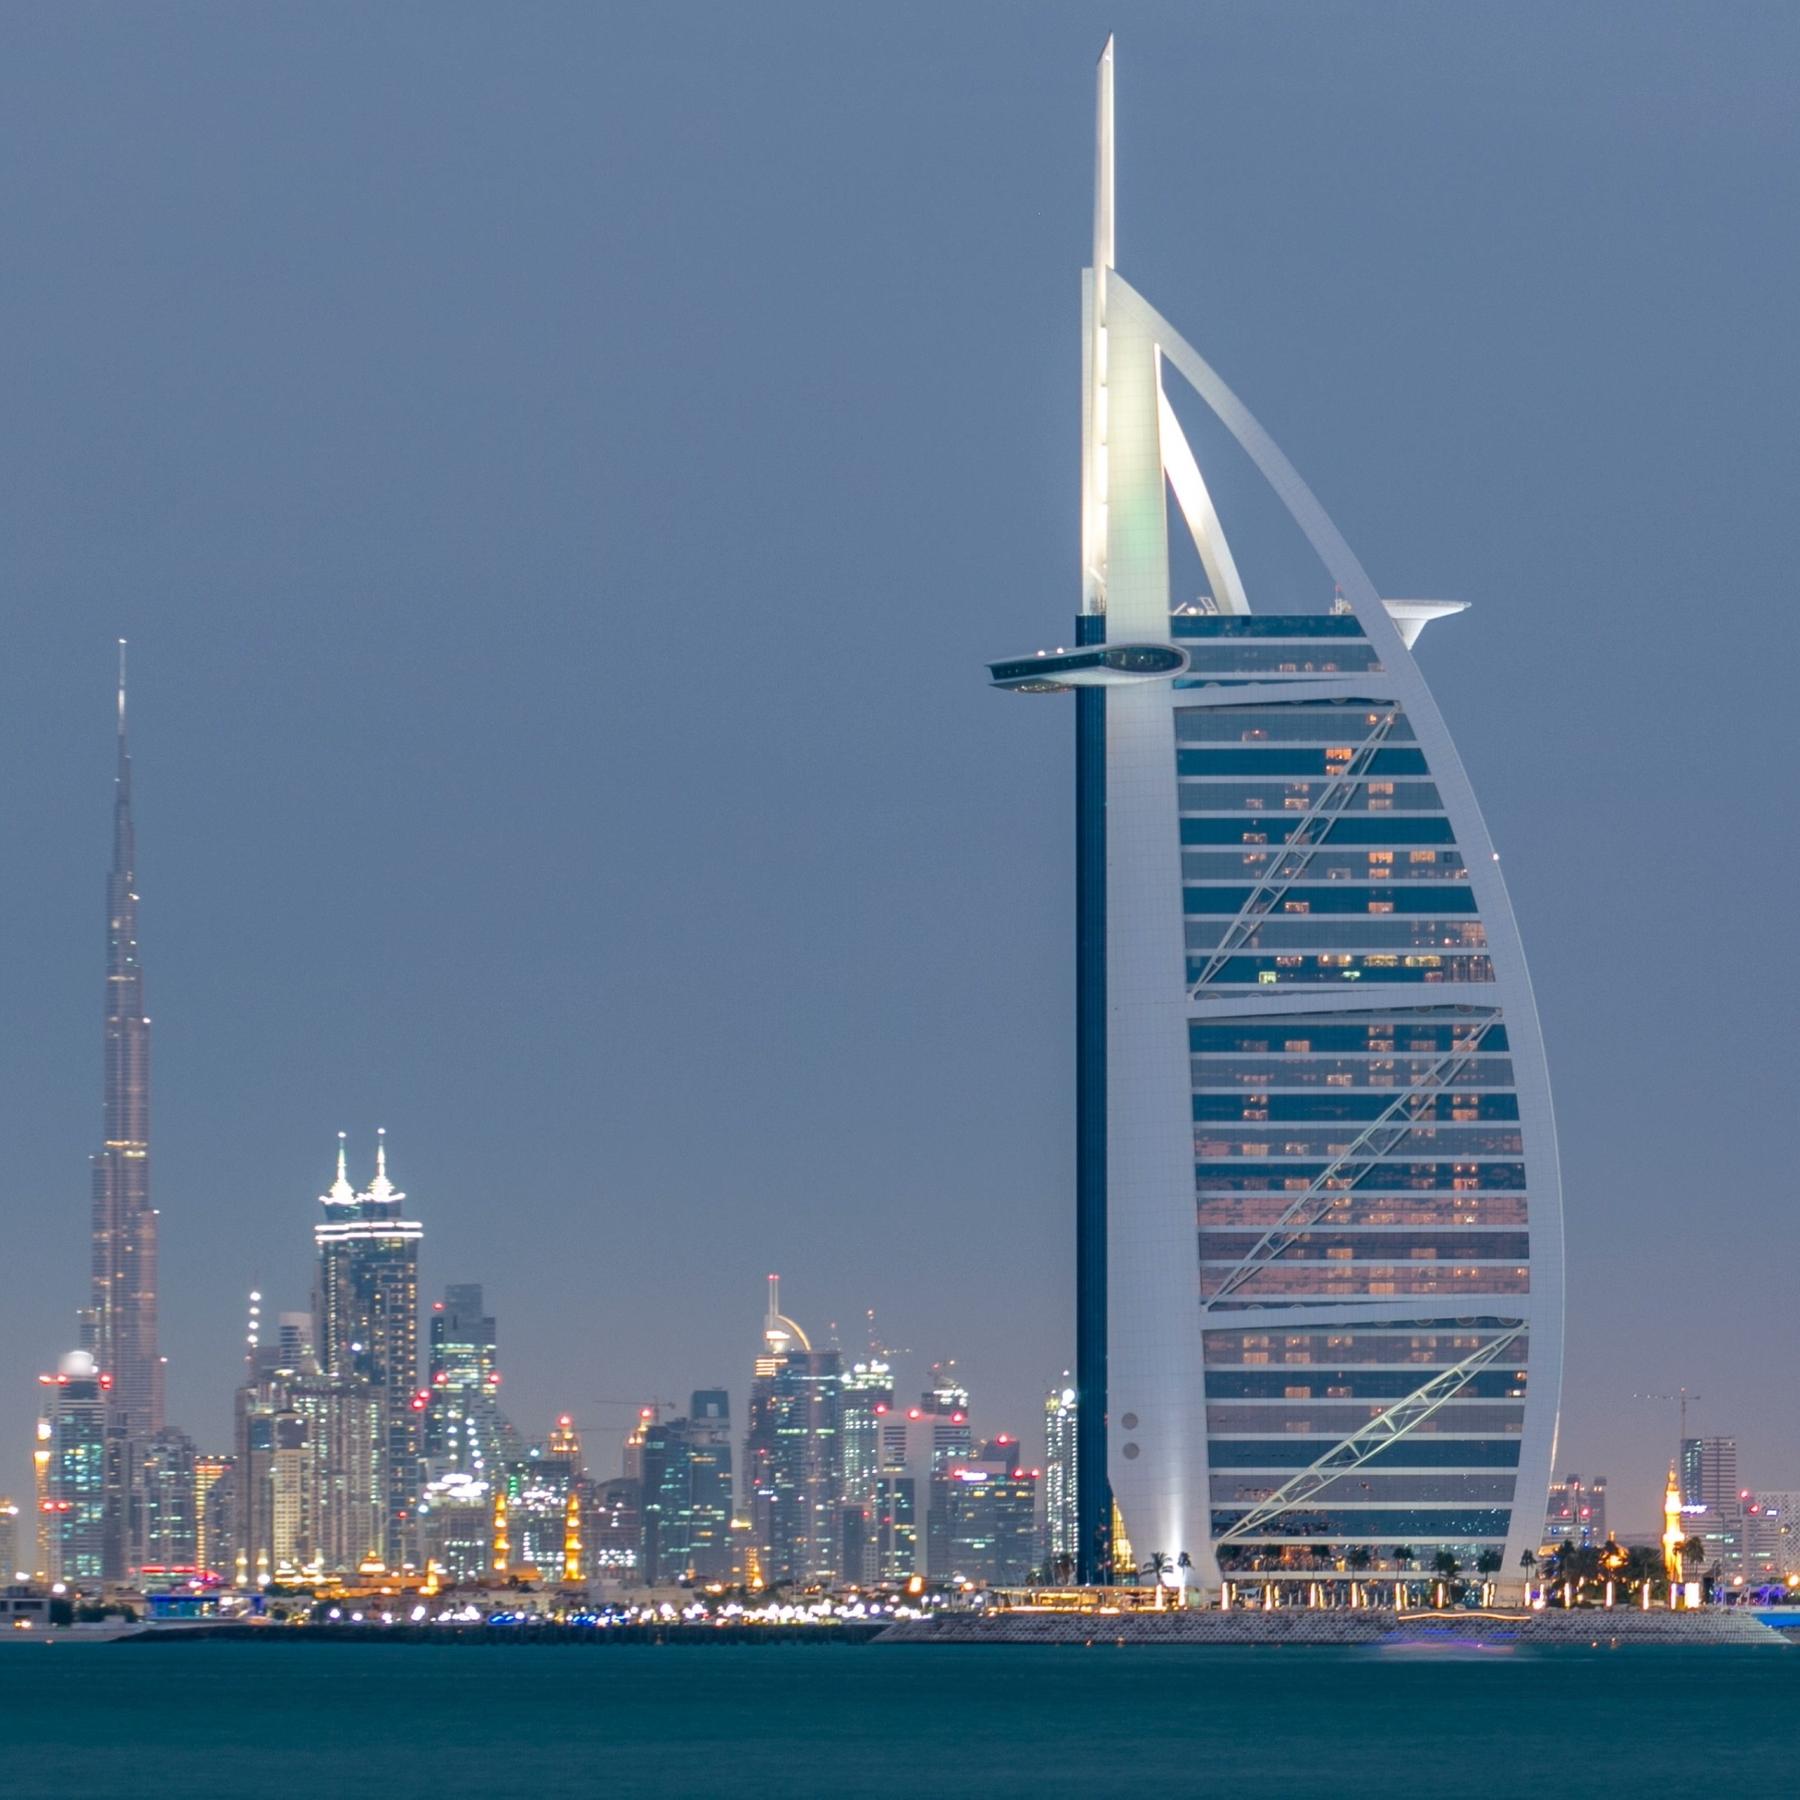 Vereinigte Arabische Emirate - Späte Gründung, schneller Boom